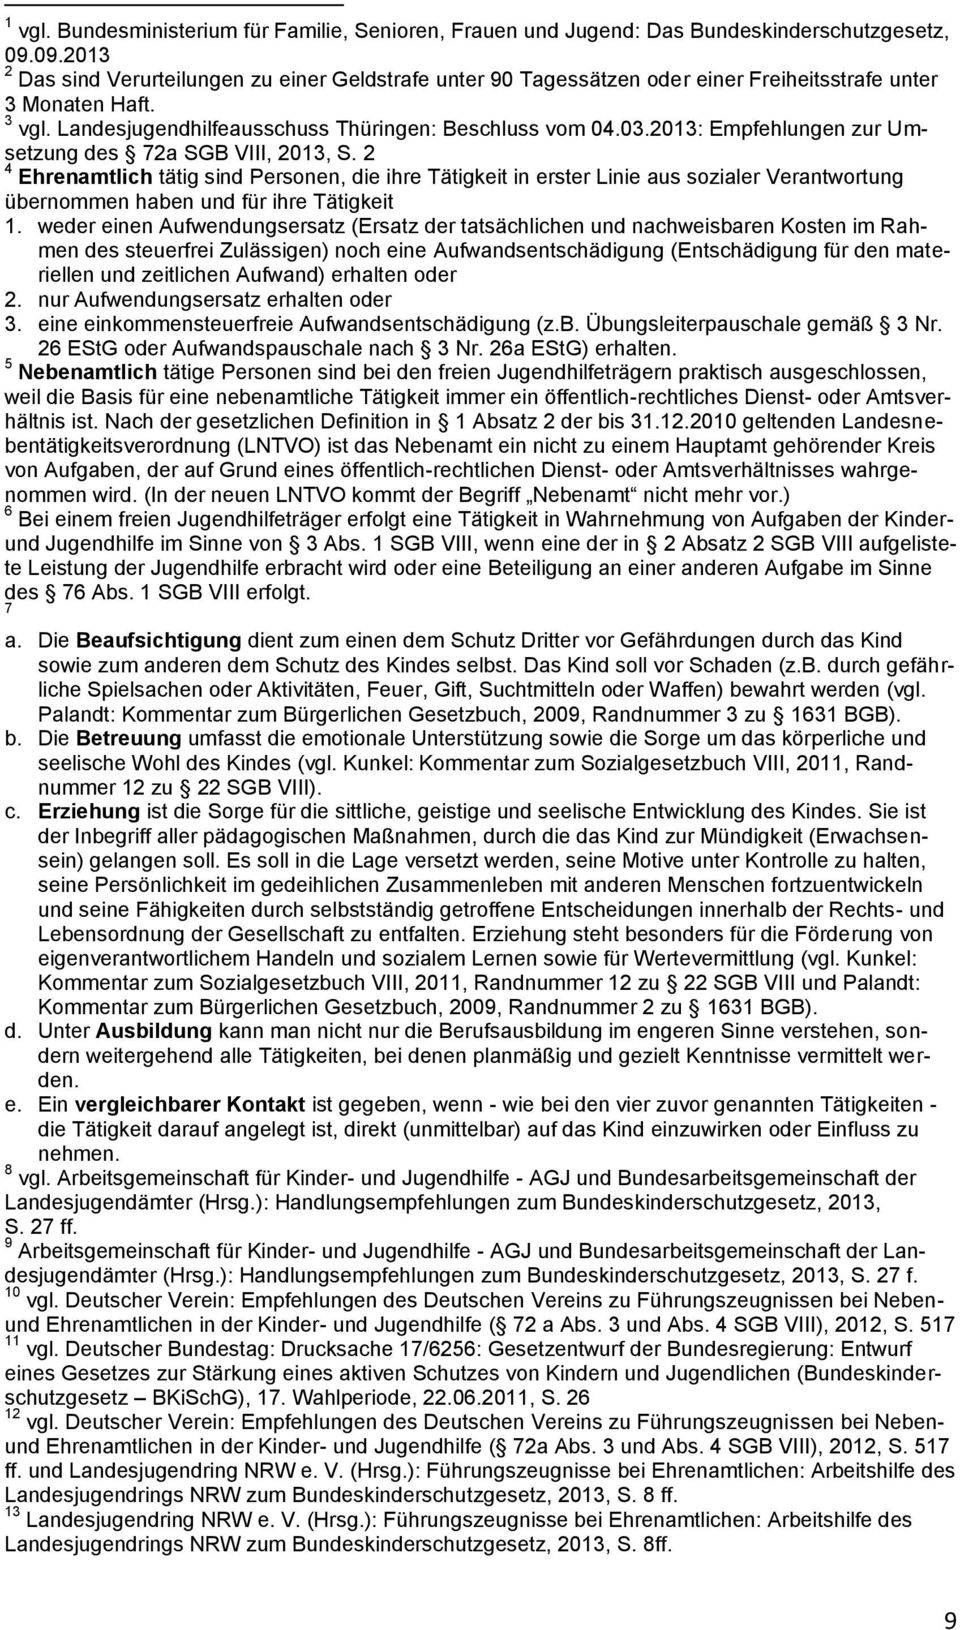 2013: Empfehlungen zur Umsetzung des 72a SGB VIII, 2013, S.